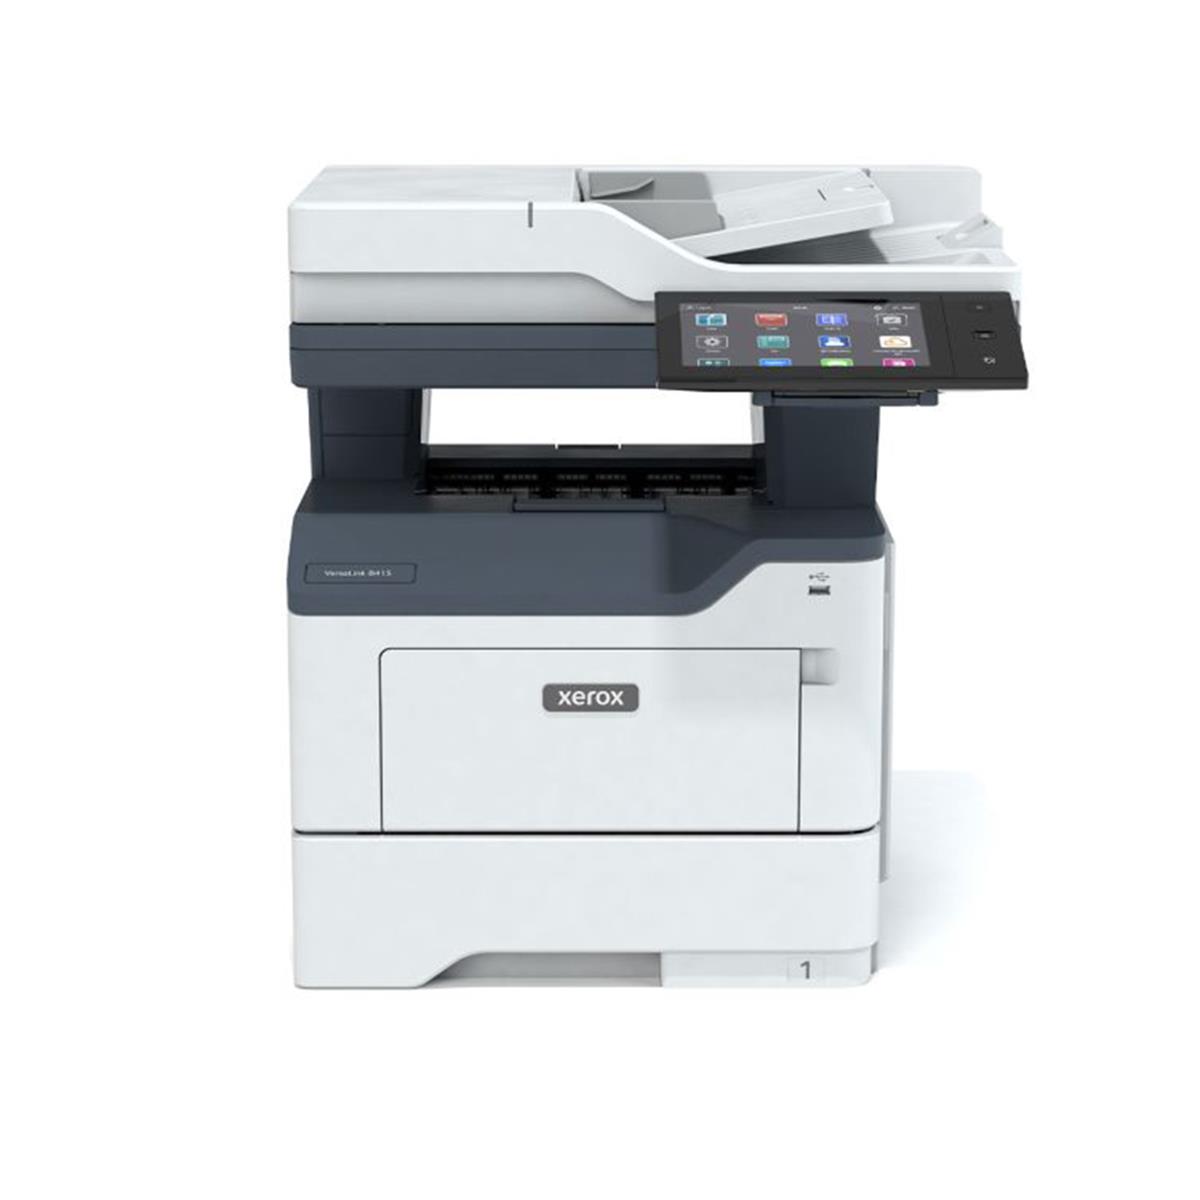 Image of Xerox VersaLink C415 Multifunction Duplex Color Laser Printer